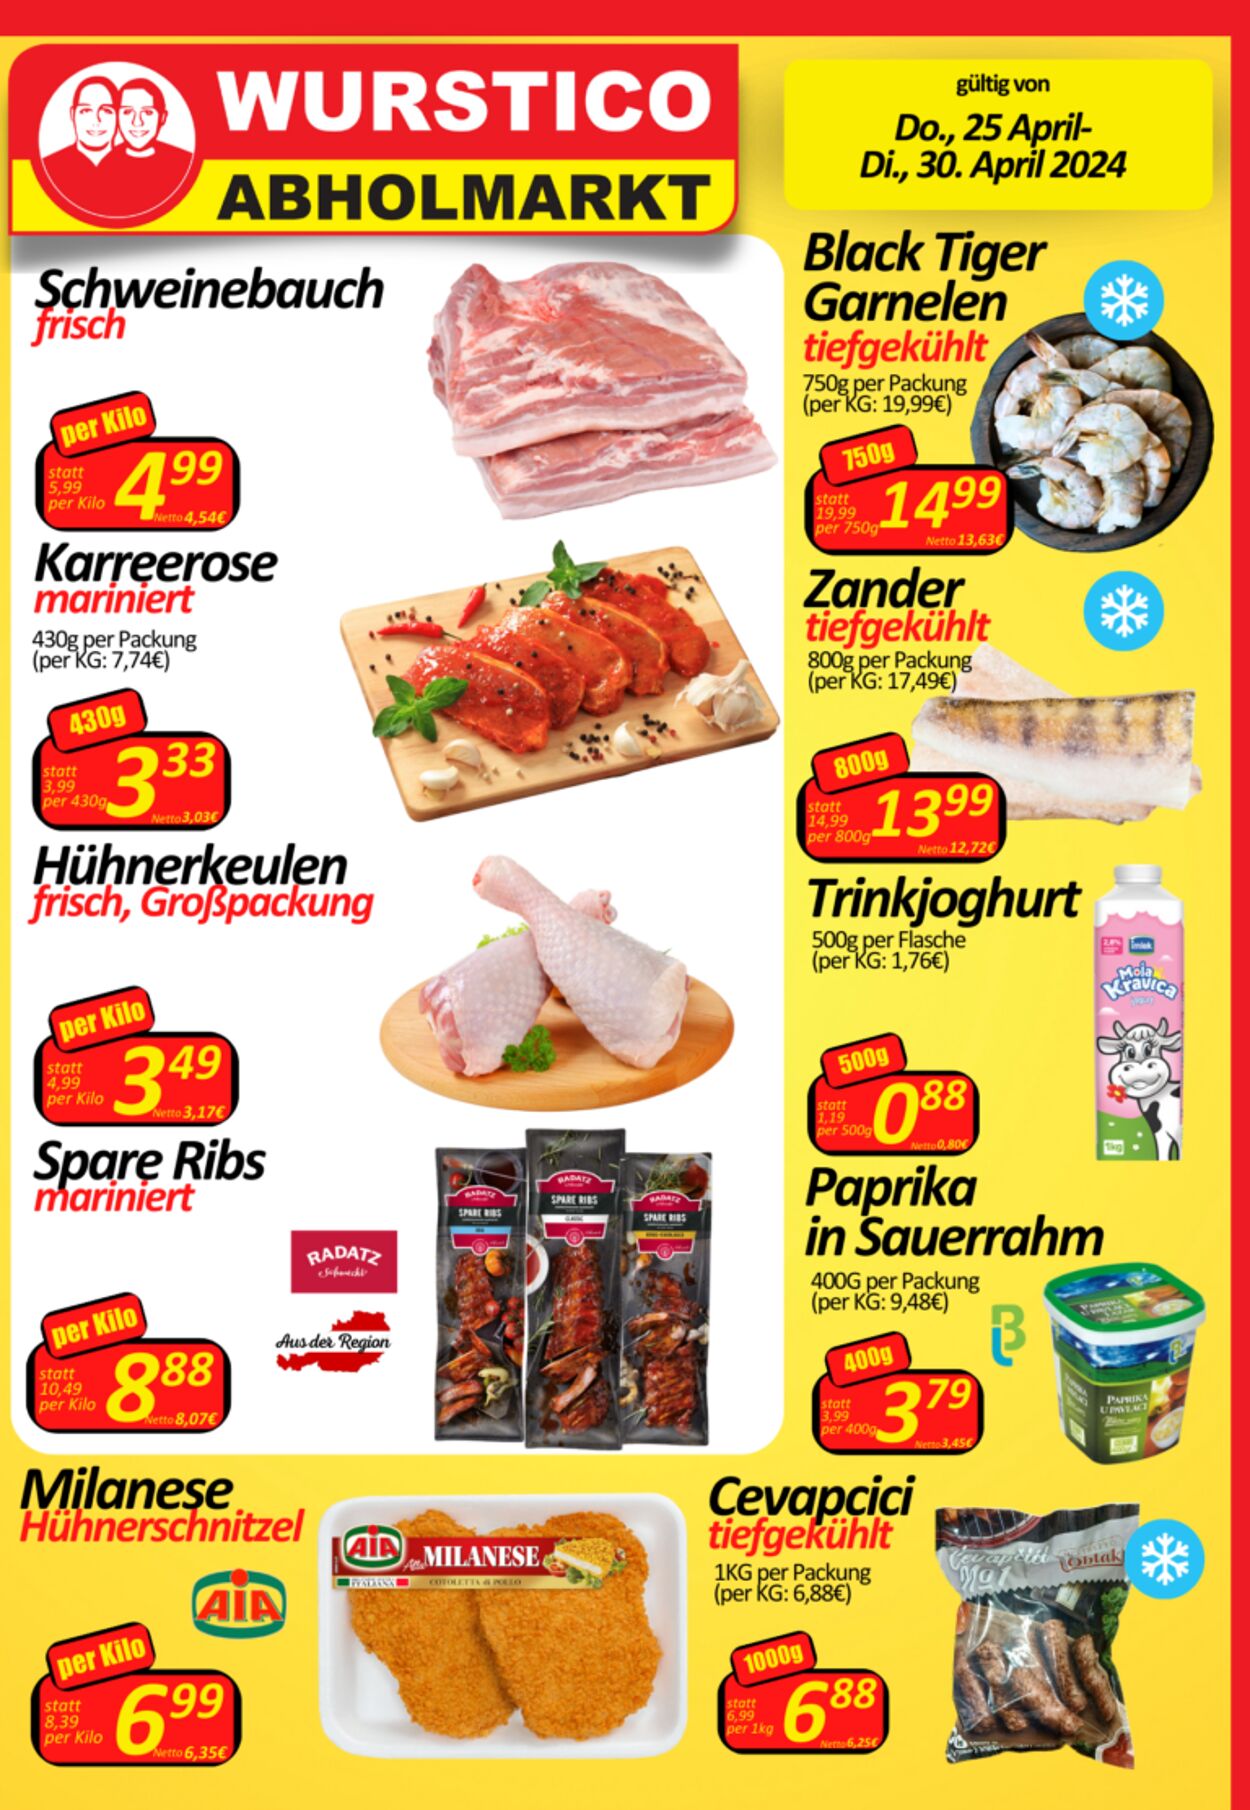 Prospekt Wurstico - Wurstico Abholmarkt – Wurst, Fleischwaren und mehr zu FabrikspreisenAktuelle Angebote bei Wurstico 25 Apr, 2024 - 30 Apr, 2024